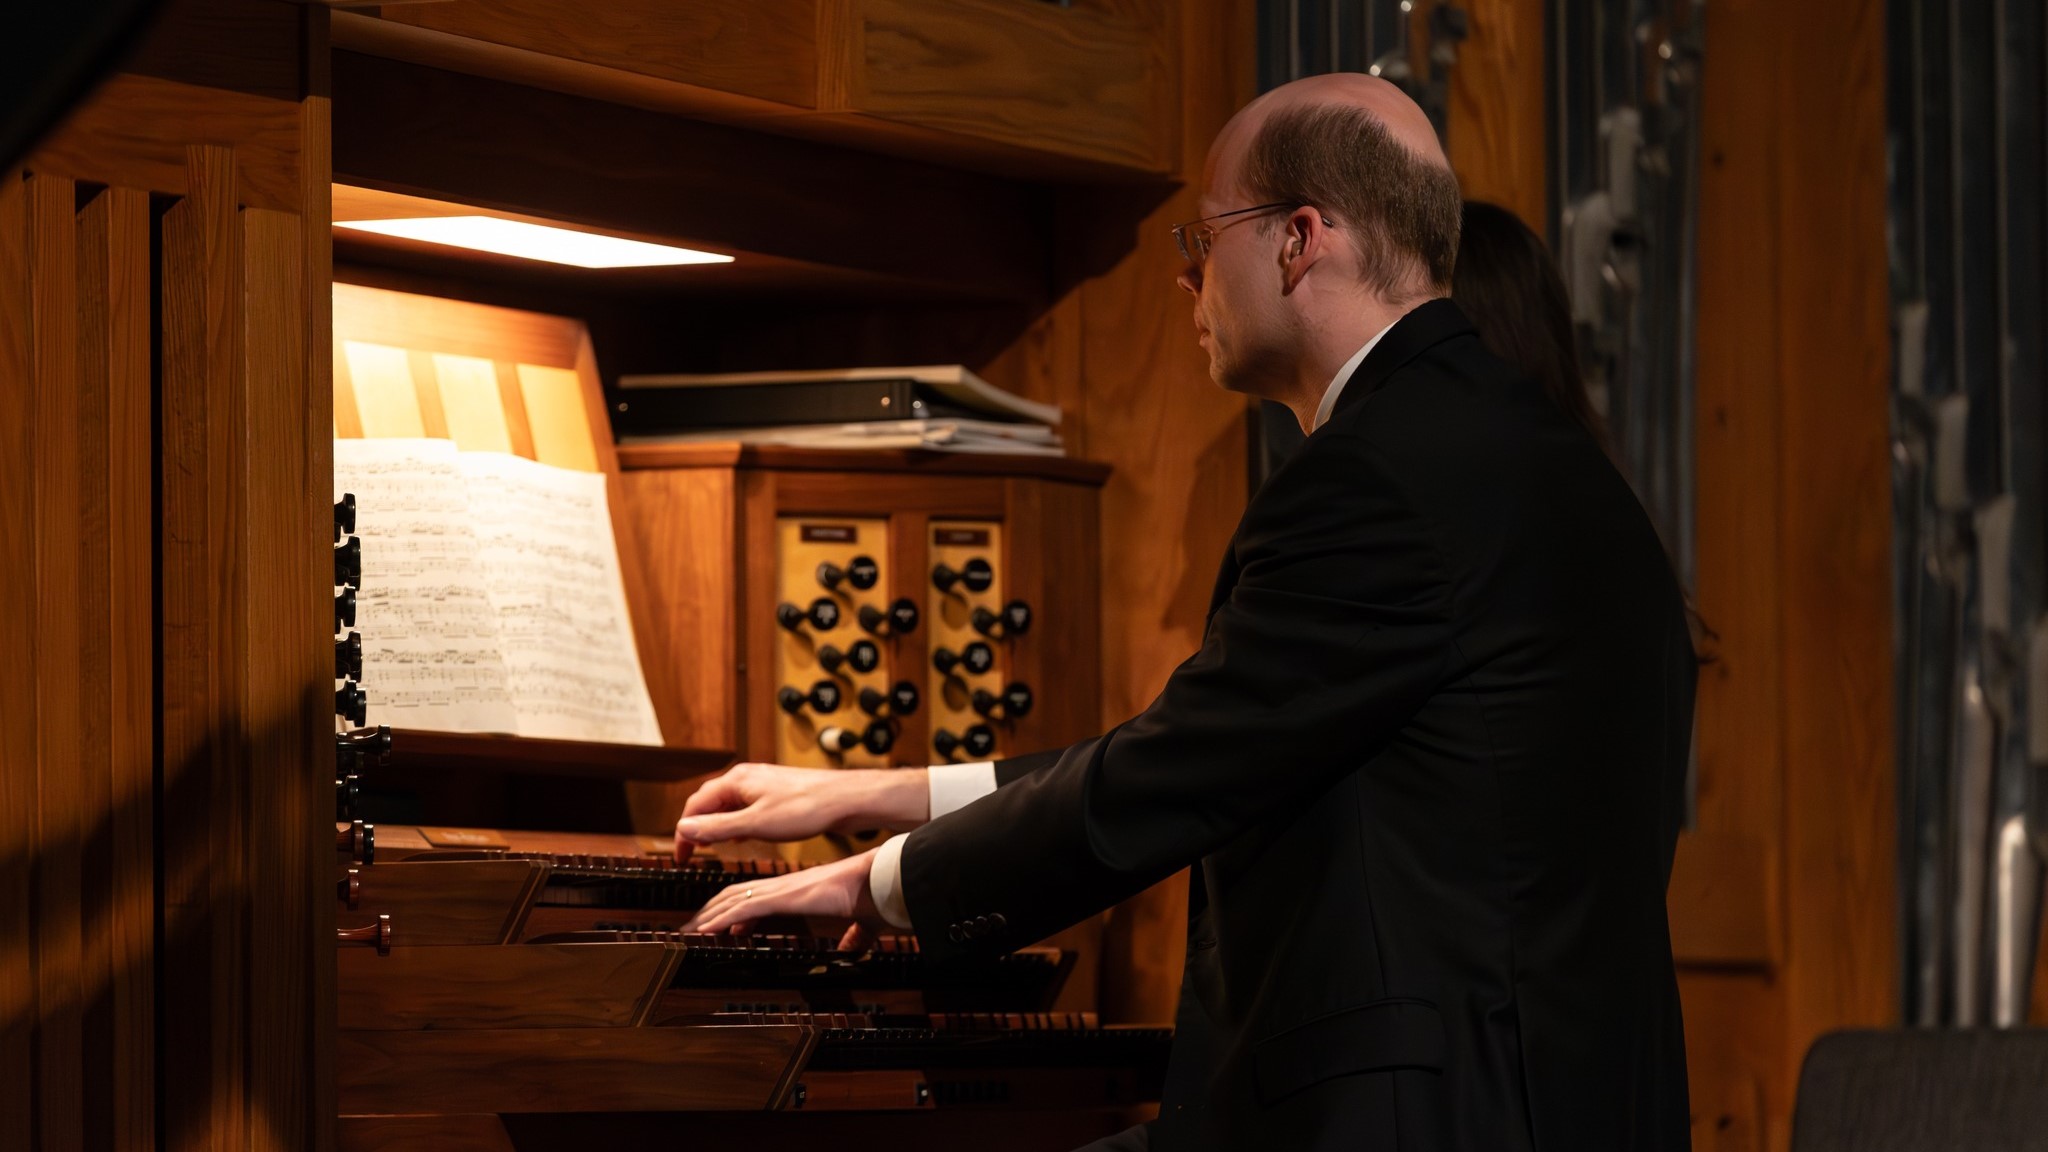 德國管風琴大師演奏會免費參與 來一睹「樂器之王」的風采吧